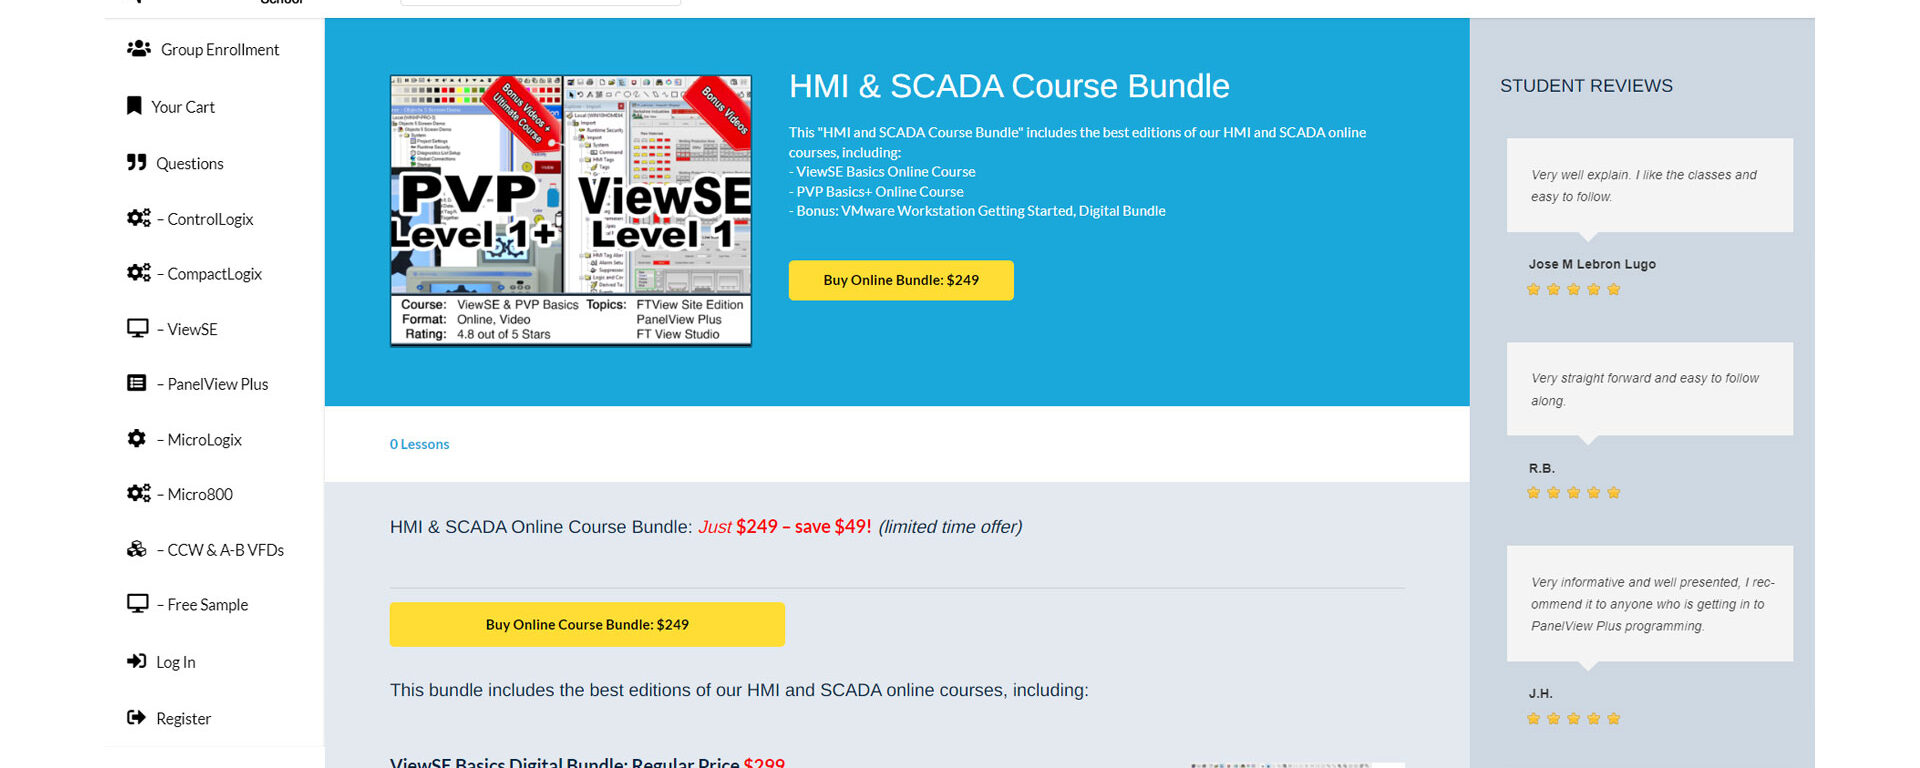 Featured Product: HMI SCADA Online Course Bundle